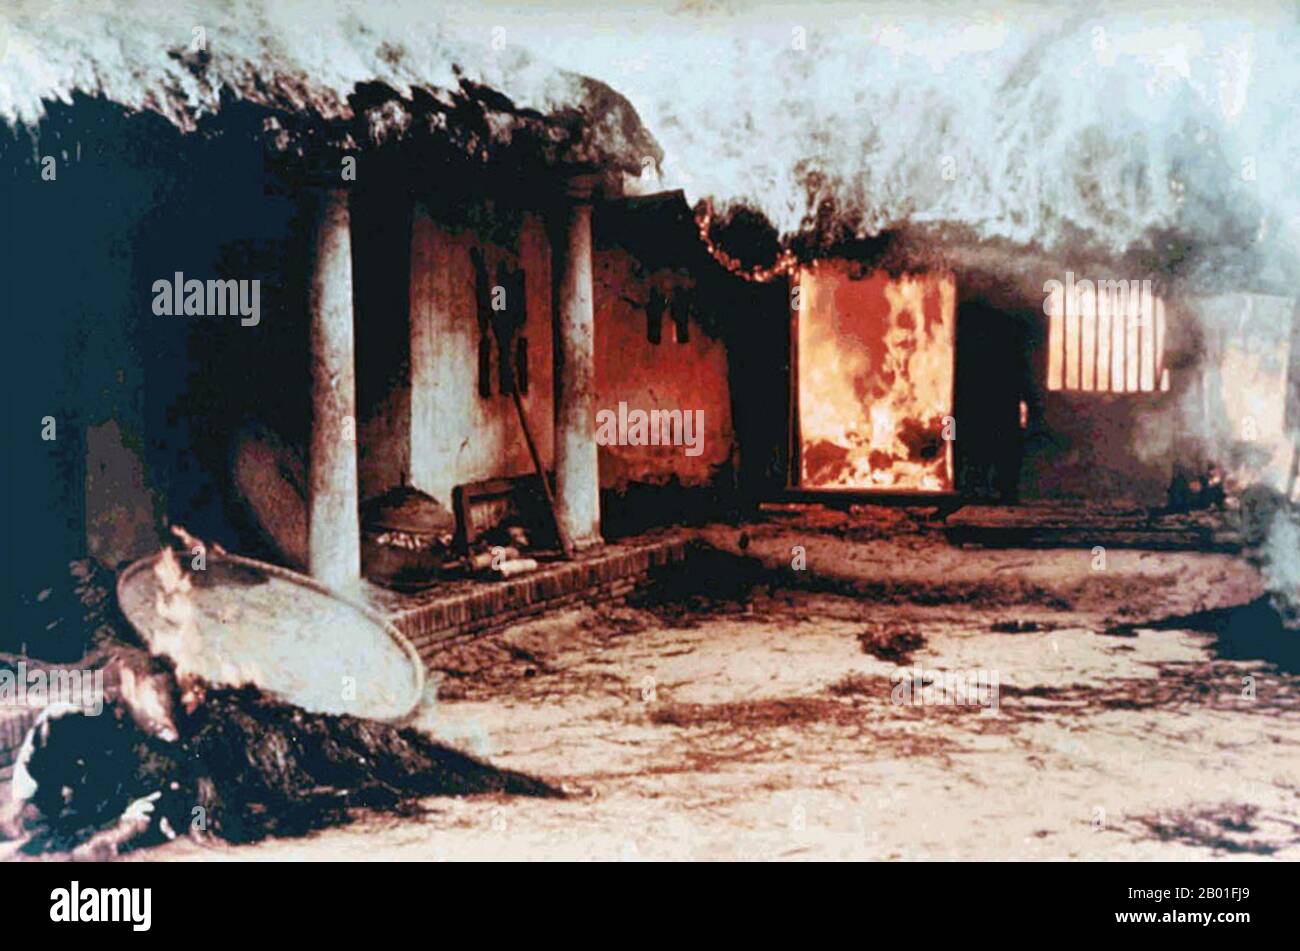 Vietnam: Unidentifizierte Leichen nahe brennendem Haus, My Lai, 16. März 1968. Foto von Sergeant Ronald L. Haeberle. Das Massaker von My Lai war der Massenmord an 347 bis 504 unbewaffneten Zivilisten in Südvietnam am 16. März 1968 durch Soldaten der "Charlie" Company vom 1. Bataillon, 20. Infanterieregiment, 11. Brigade der Amerikanischen Division. Die meisten Opfer waren Frauen, Kinder (einschließlich Babys) und ältere Menschen. Viele wurden vergewaltigt, geschlagen und gefoltert, und einige der Leichen wurden später als verstümmelt gefunden. Stockfoto